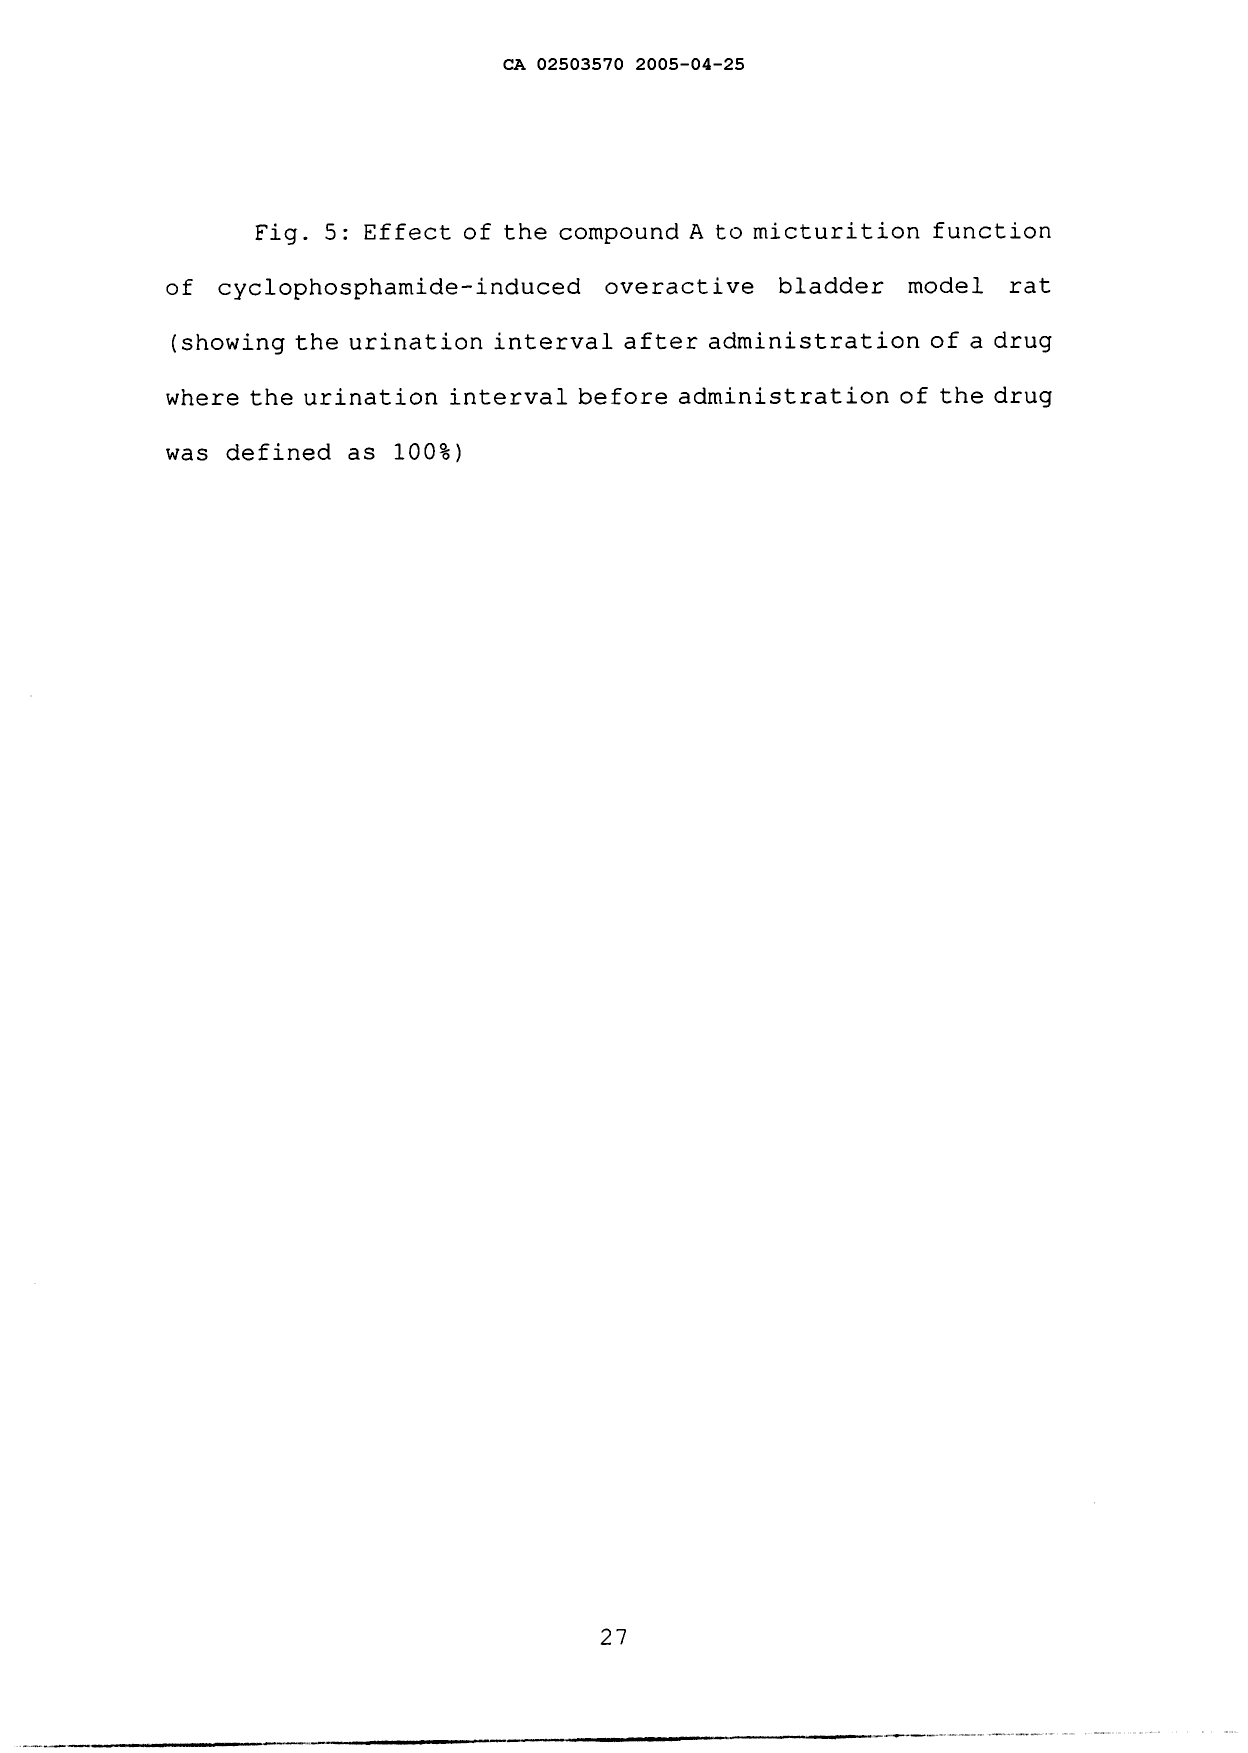 Document de brevet canadien 2503570. Description 20041225. Image 27 de 27